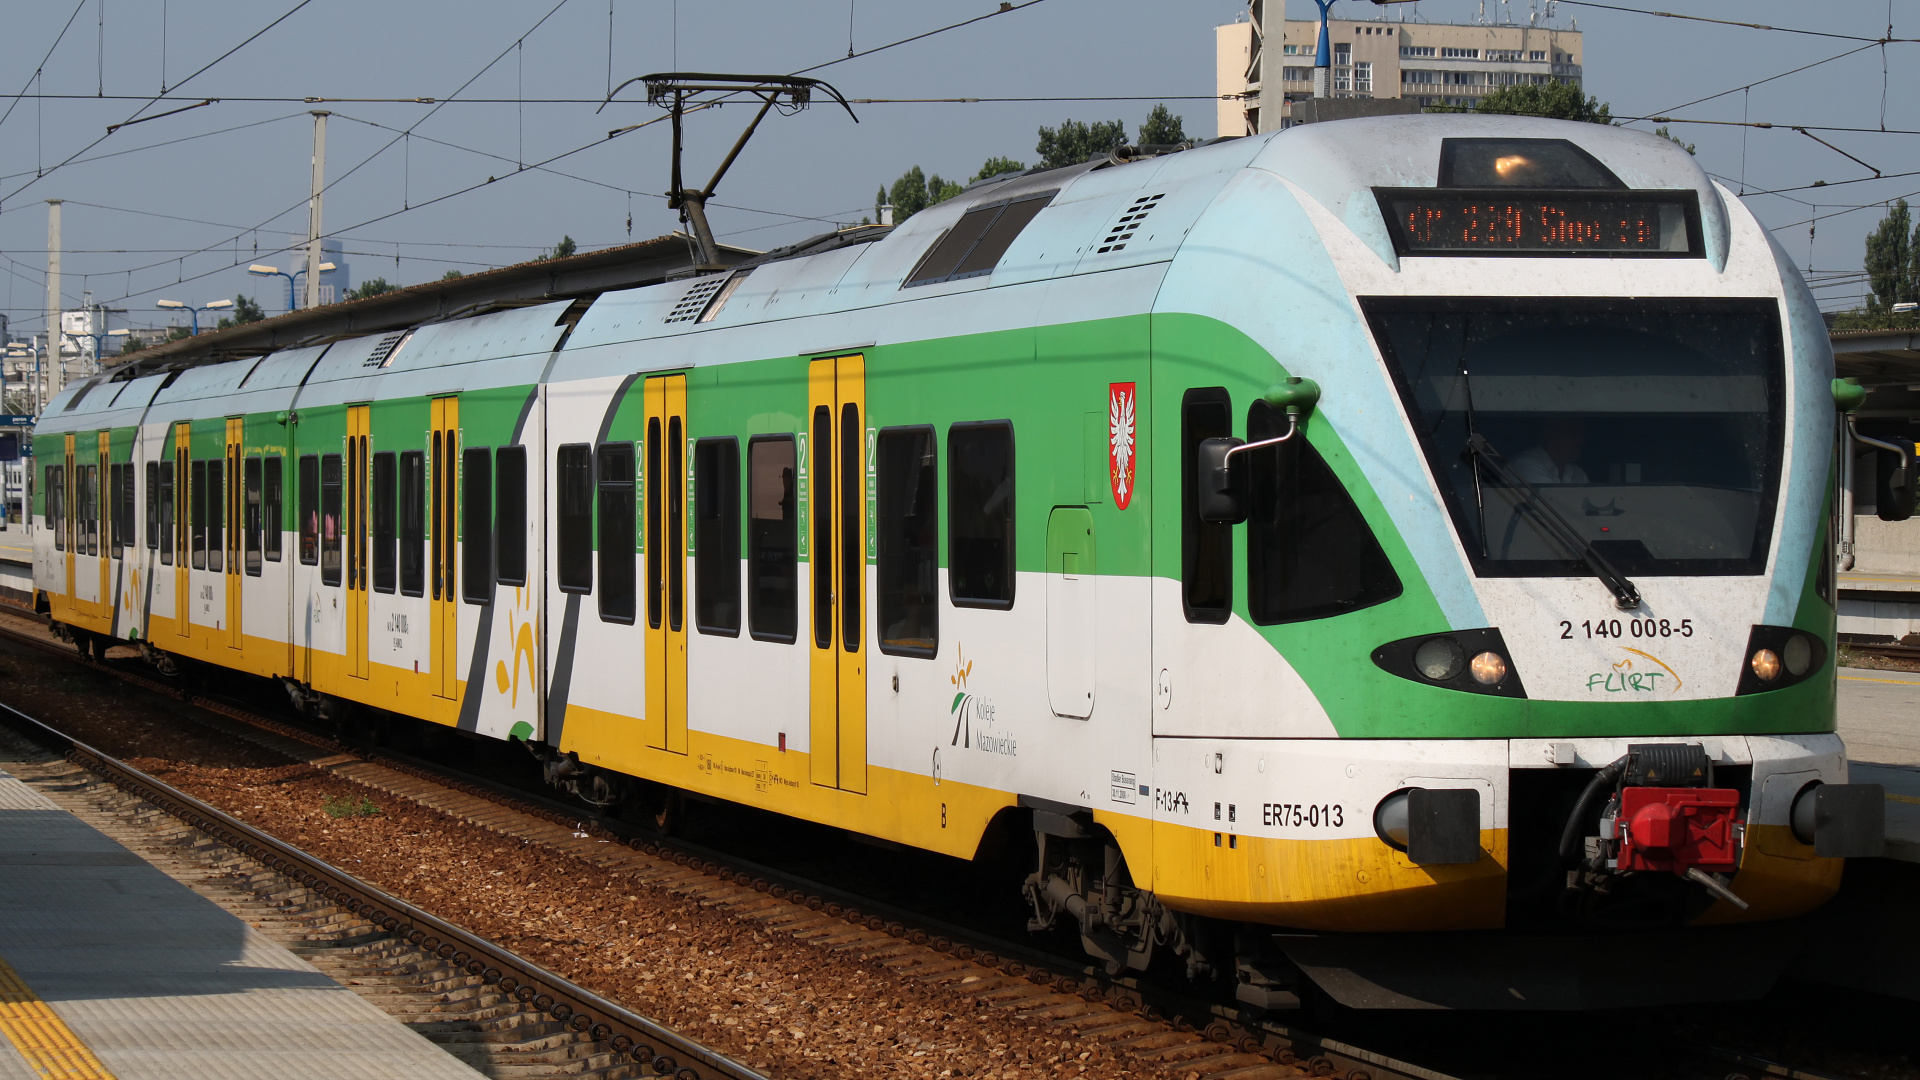 ER75-013 (Pojazdy » Pociągi i lokomotywy » Stadler FLIRT)